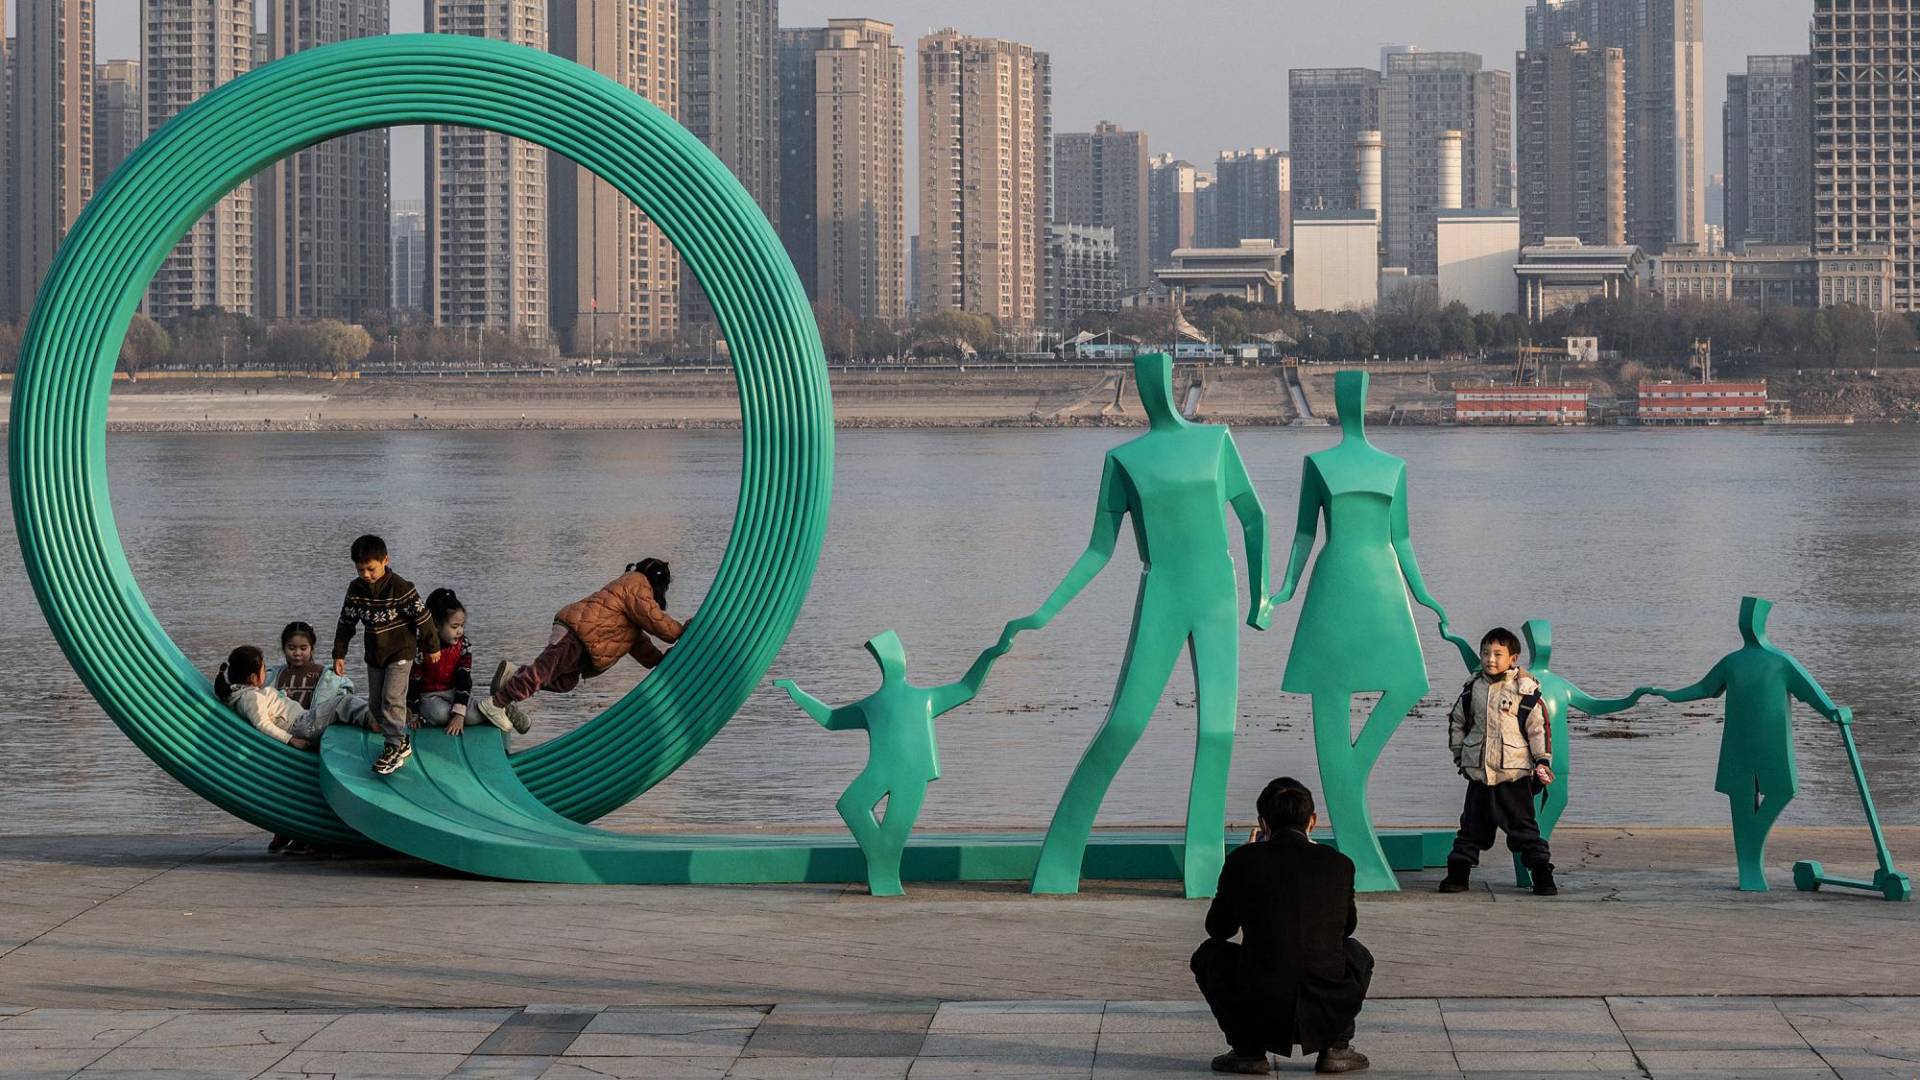 $!Hace poco se agregaron dos niños más a una escultura en Wuhan, China, que retrata a una familia alegre.